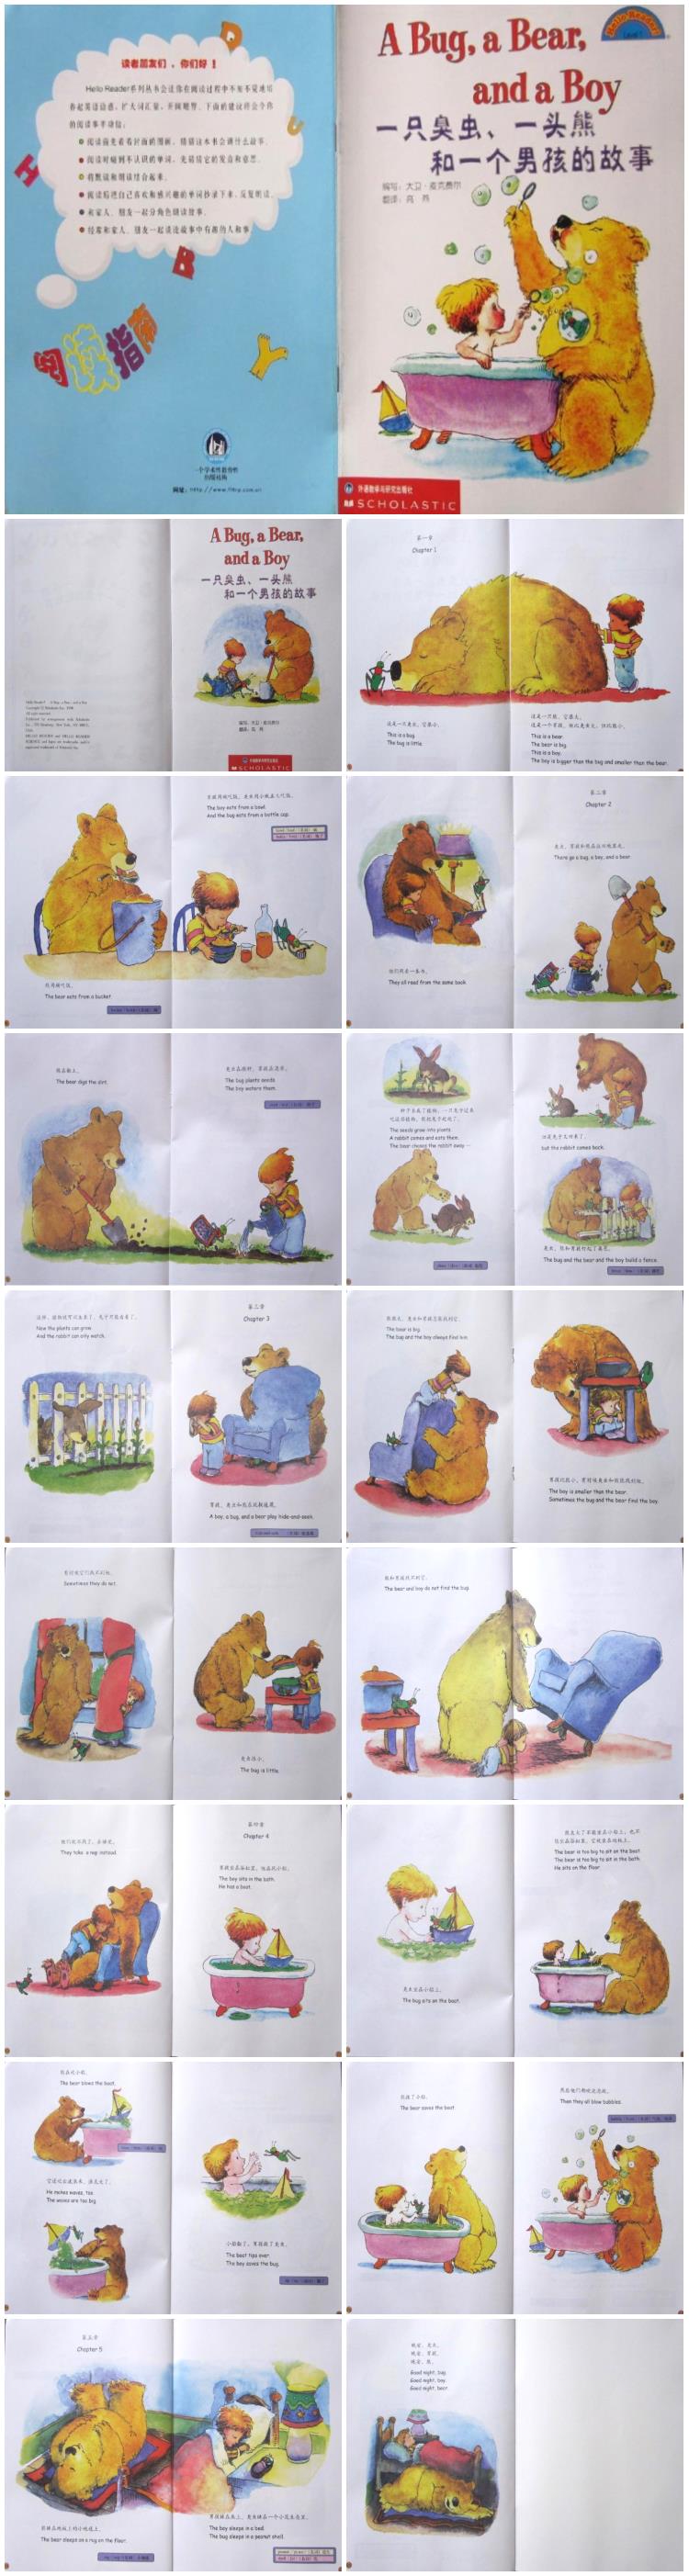 《一只臭虫、一头熊和一个男孩的故事》童话绘本故事PPT